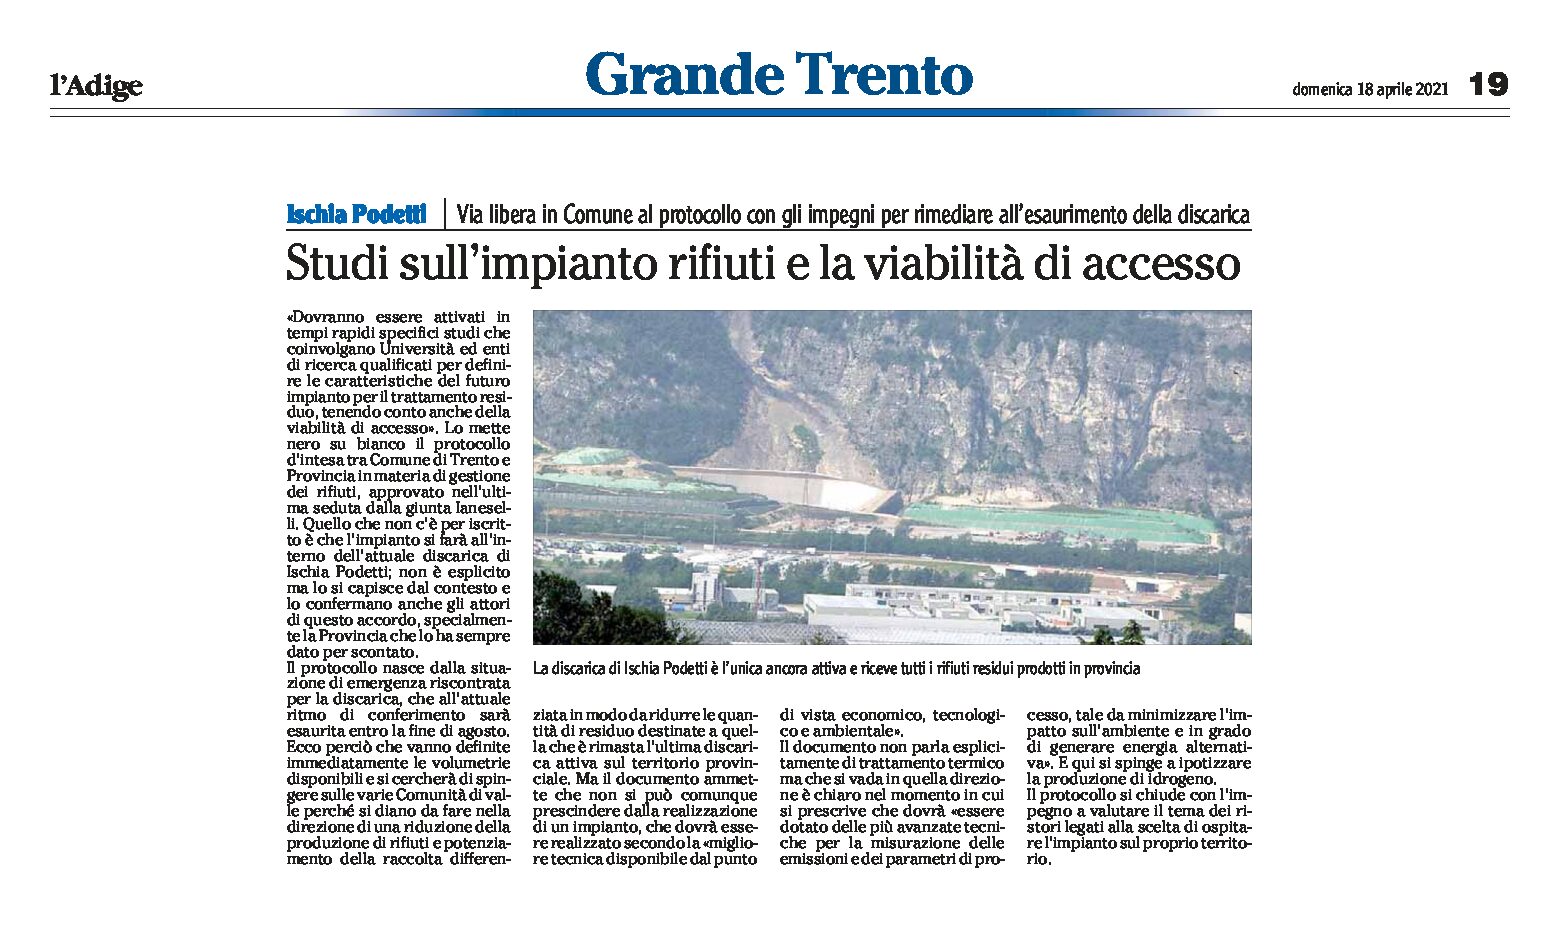 Trento, Ischia Podetti: studi sull’impianto rifiuti e la viabilità di accesso